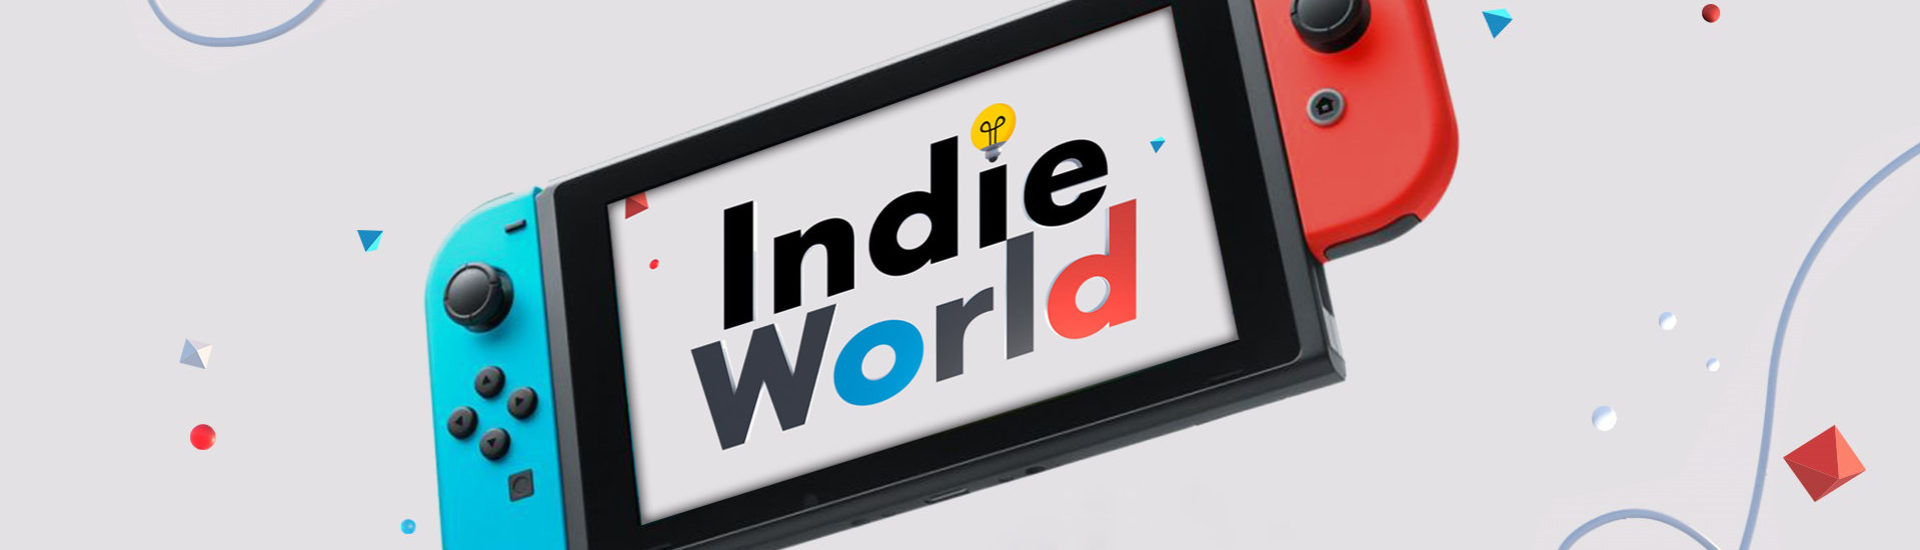 Nintendo Indie World: Alle Ankündigungen im Überblick